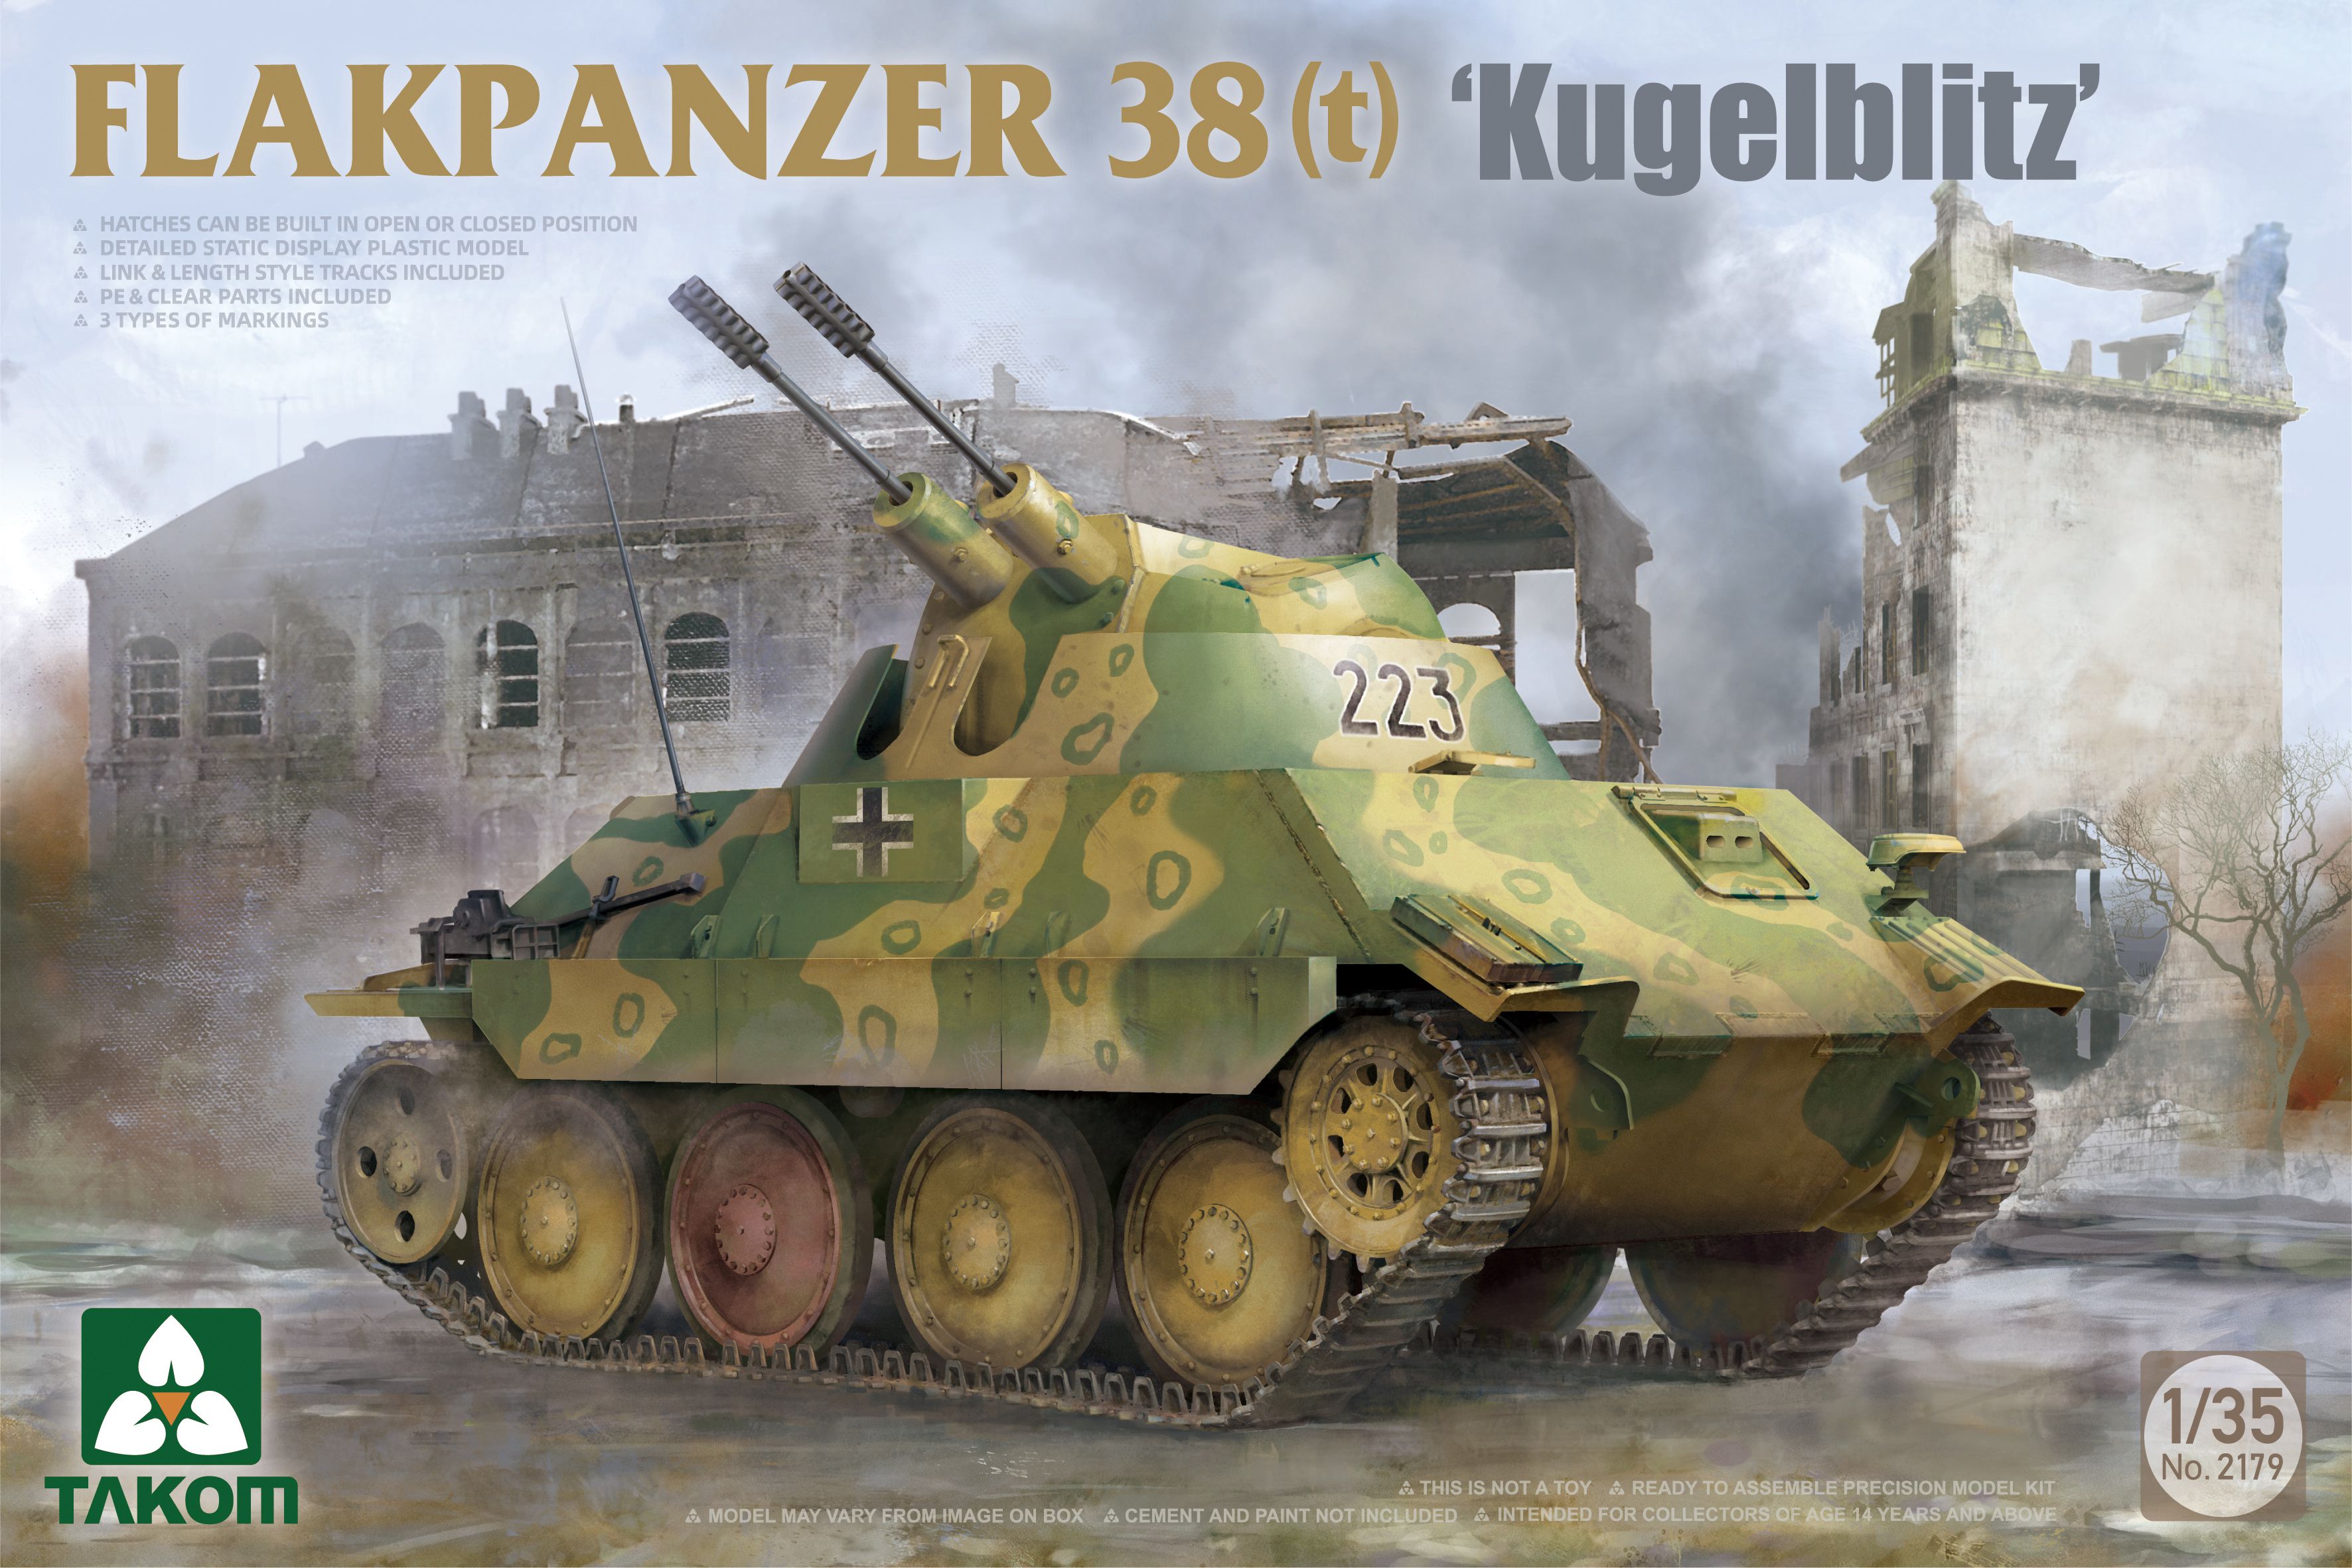 Flakpanzer 38(t) - Kugelblitz